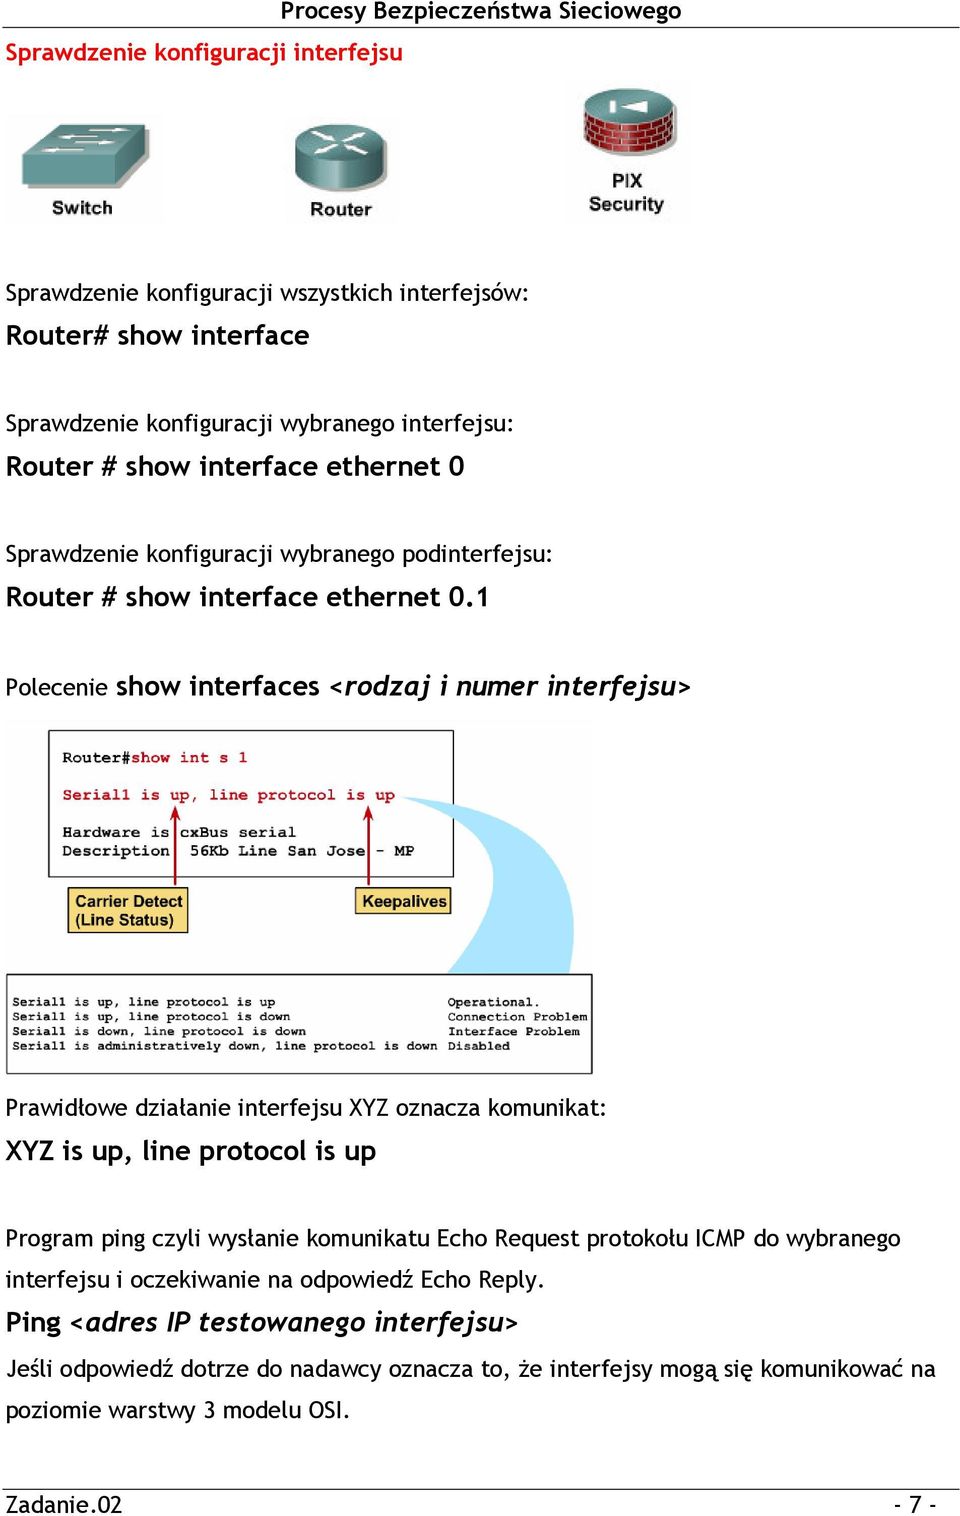 1 Polecenie show interfaces <rodzaj i numer interfejsu> Prawidłowe działanie interfejsu XYZ oznacza komunikat: XYZ is up, line protocol is up Program ping czyli wysłanie komunikatu Echo